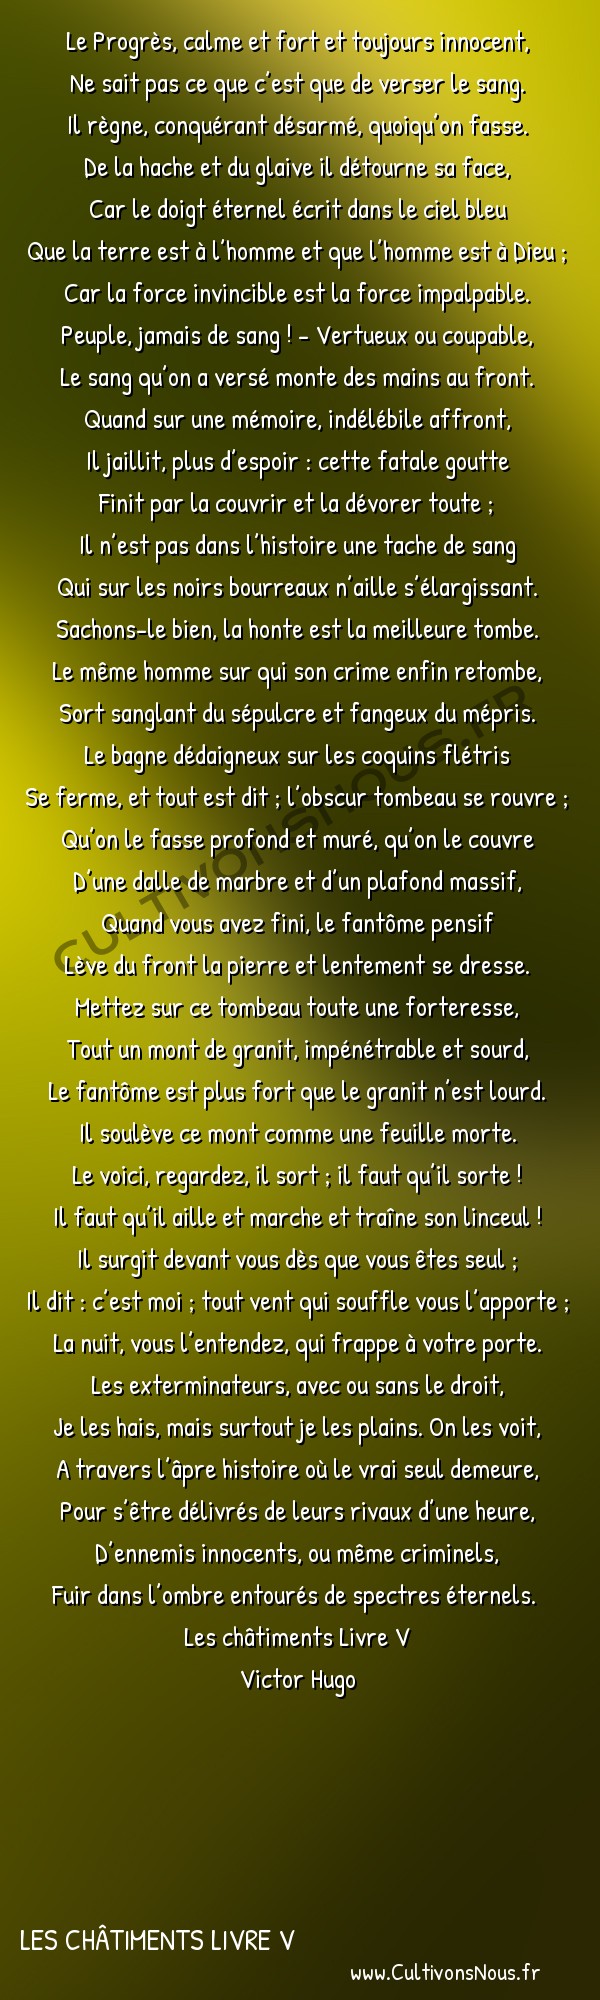  Poésie Victor Hugo - Les châtiments Livre V - Le Progrès calme et fort -  Le Progrès, calme et fort et toujours innocent, Ne sait pas ce que c’est que de verser le sang.